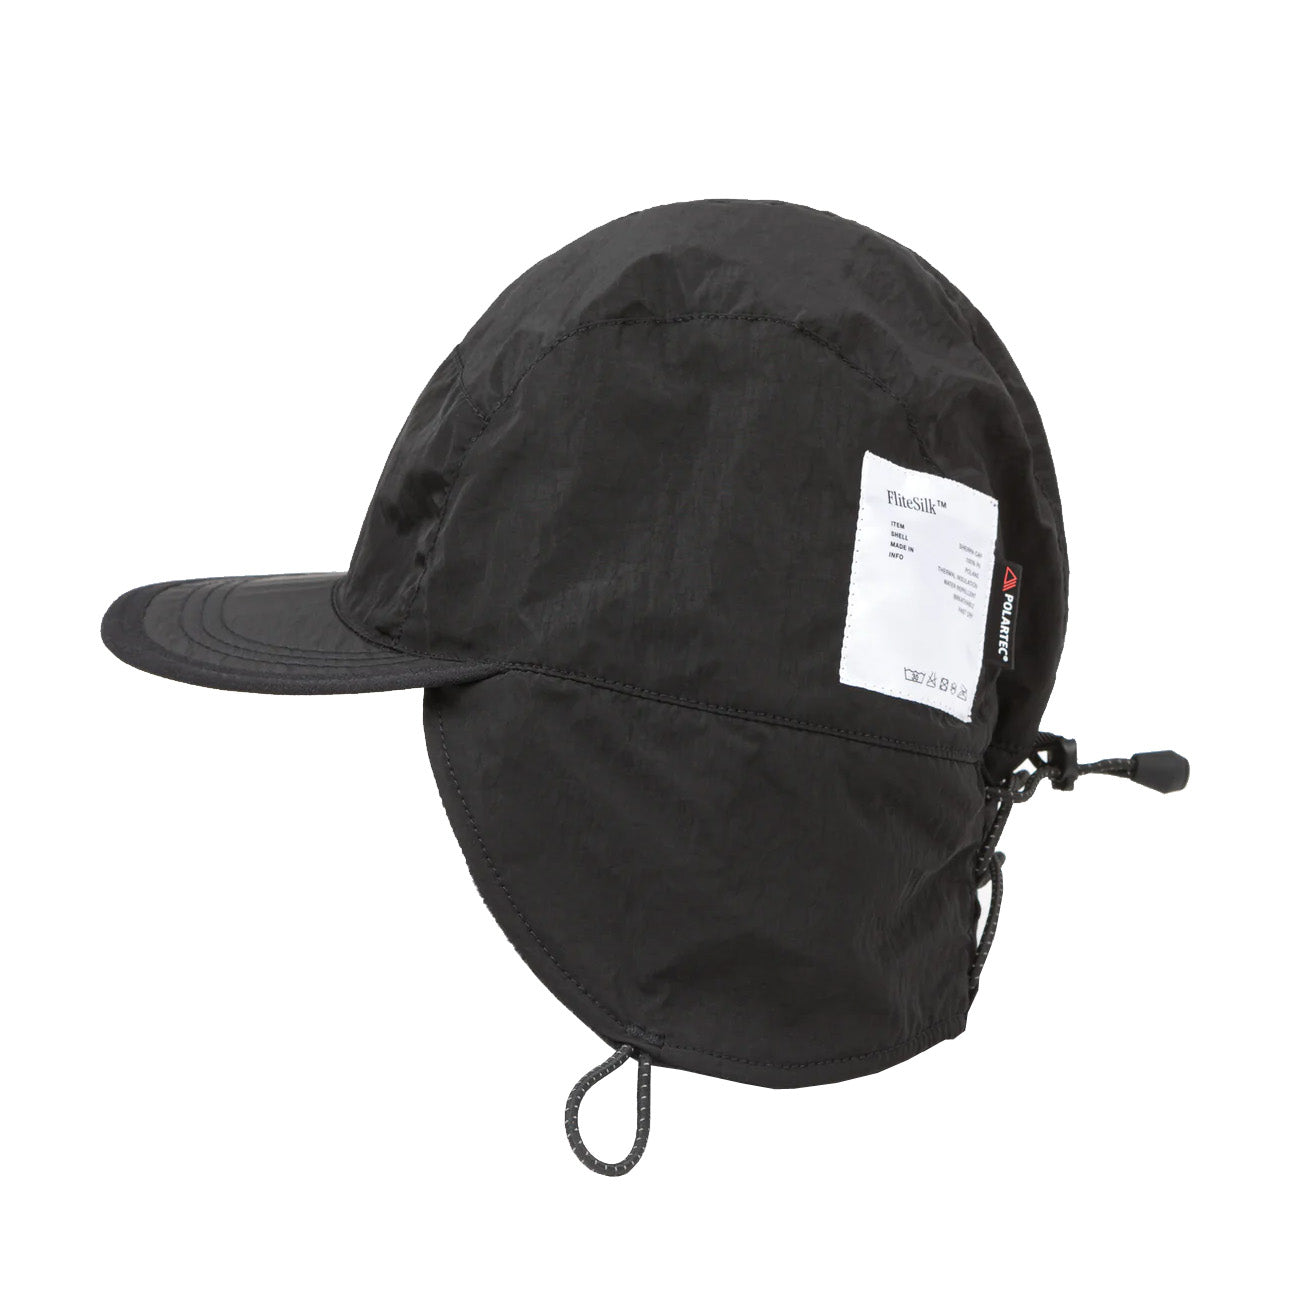 Satisfy Running Peaceshell Sherpa Hat Black